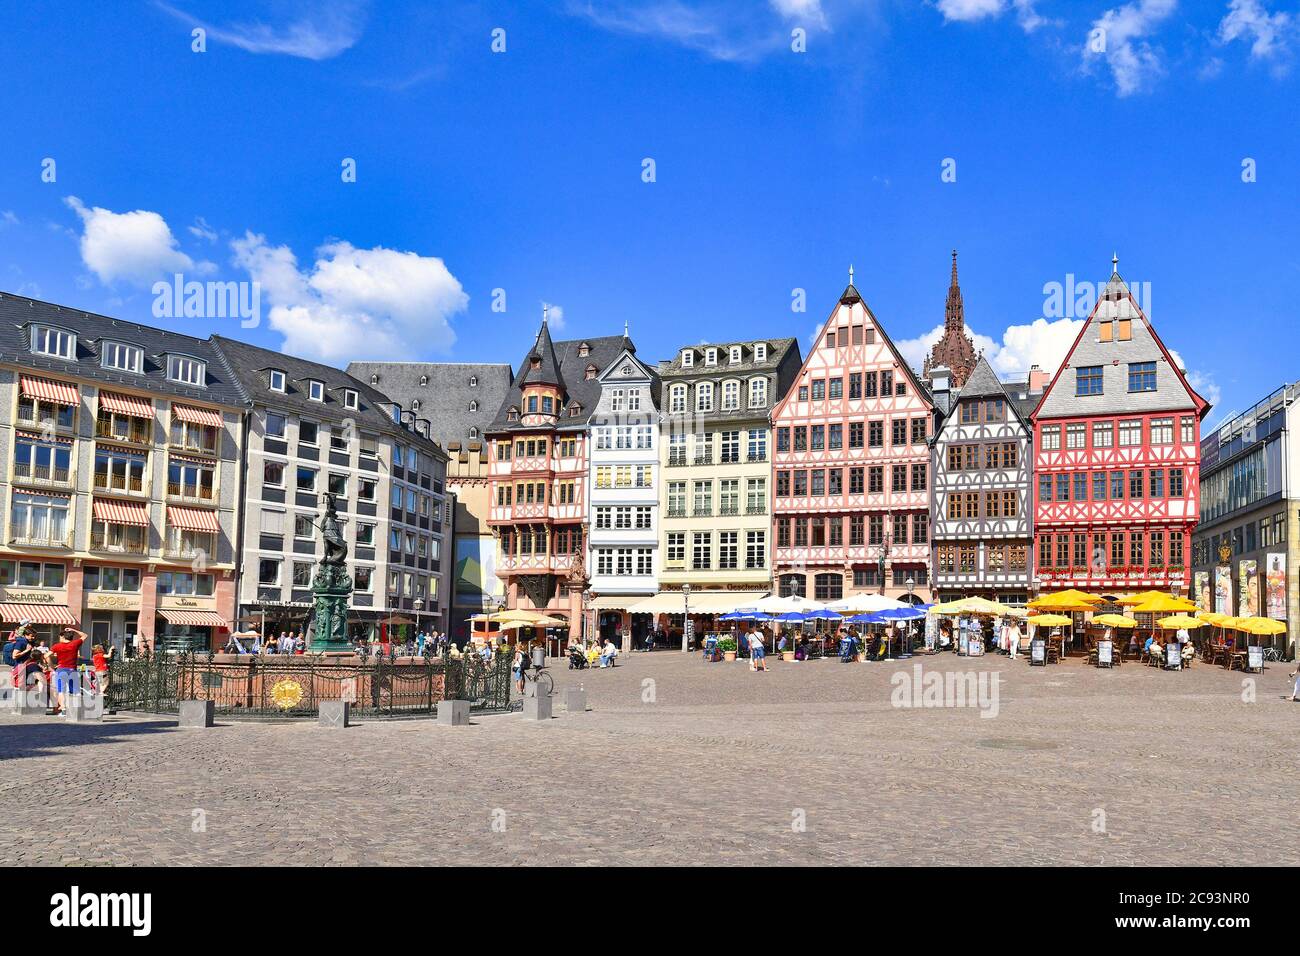 Deutschland, Stadtplatz genannt 'Römerberg' mit schönen bunten Gebäuden im historischen mittelalterlichen Stadtzentrum von Frankfurt Stockfoto